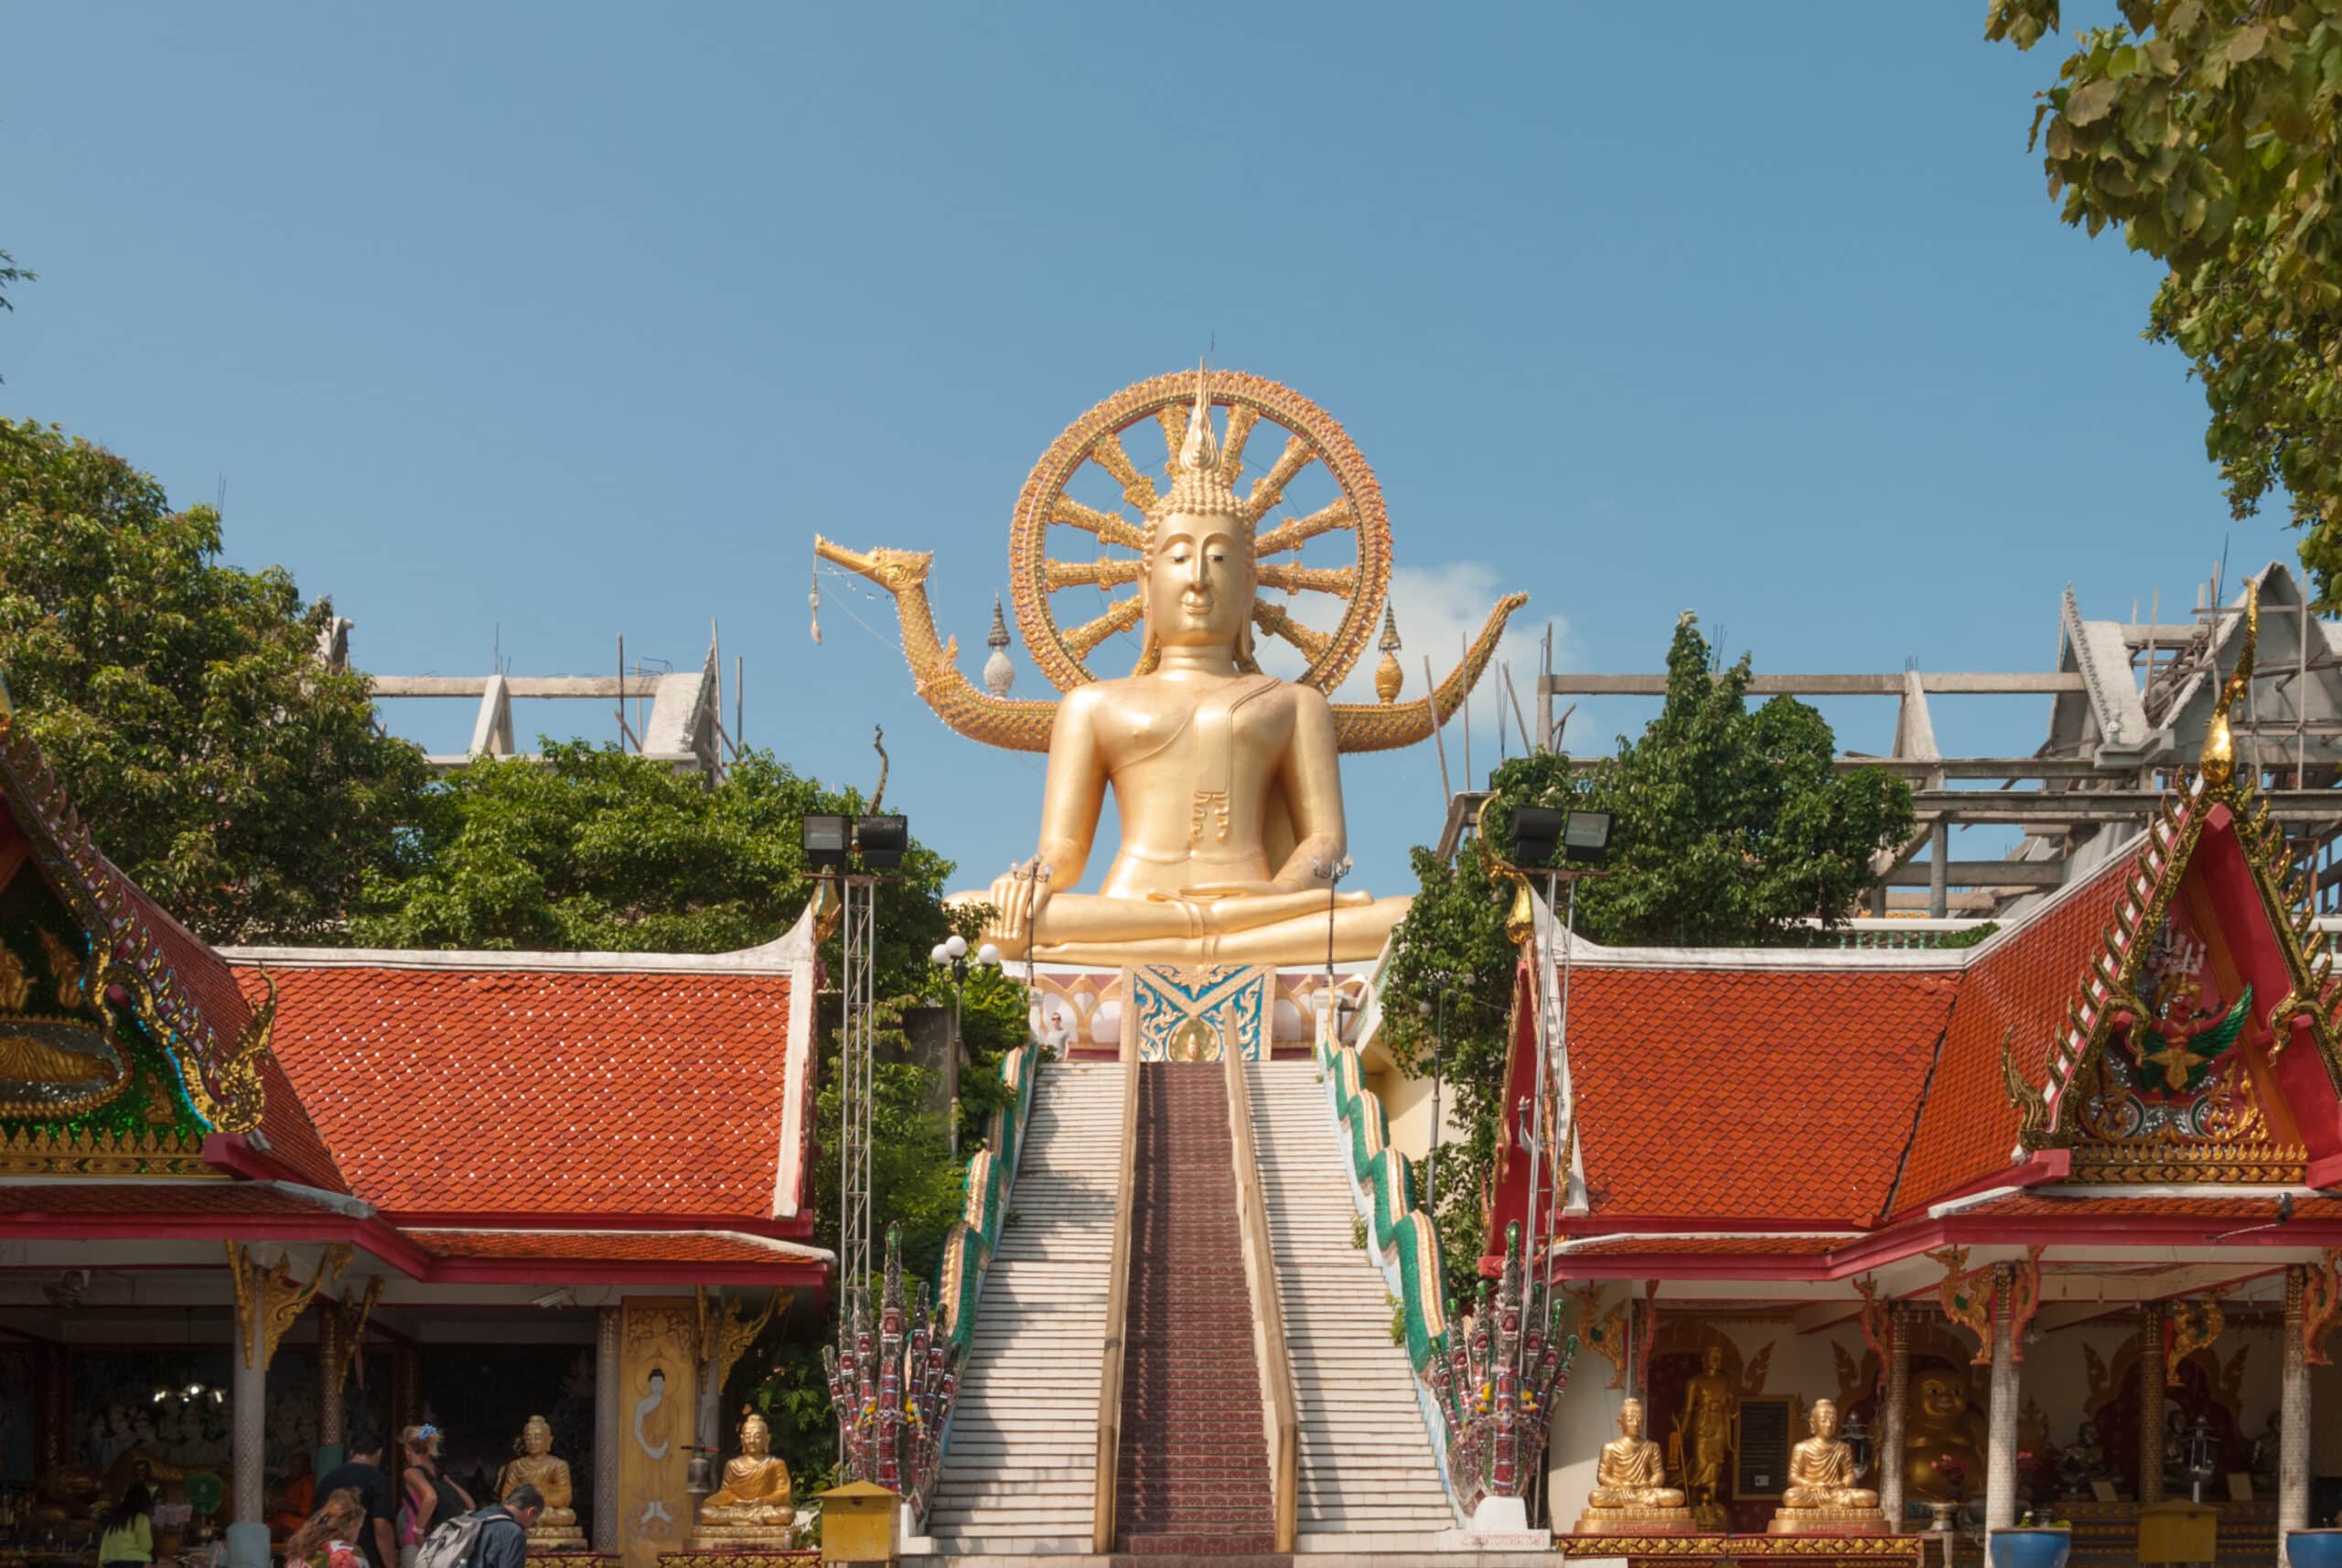 Big Buddha of Koh Samui